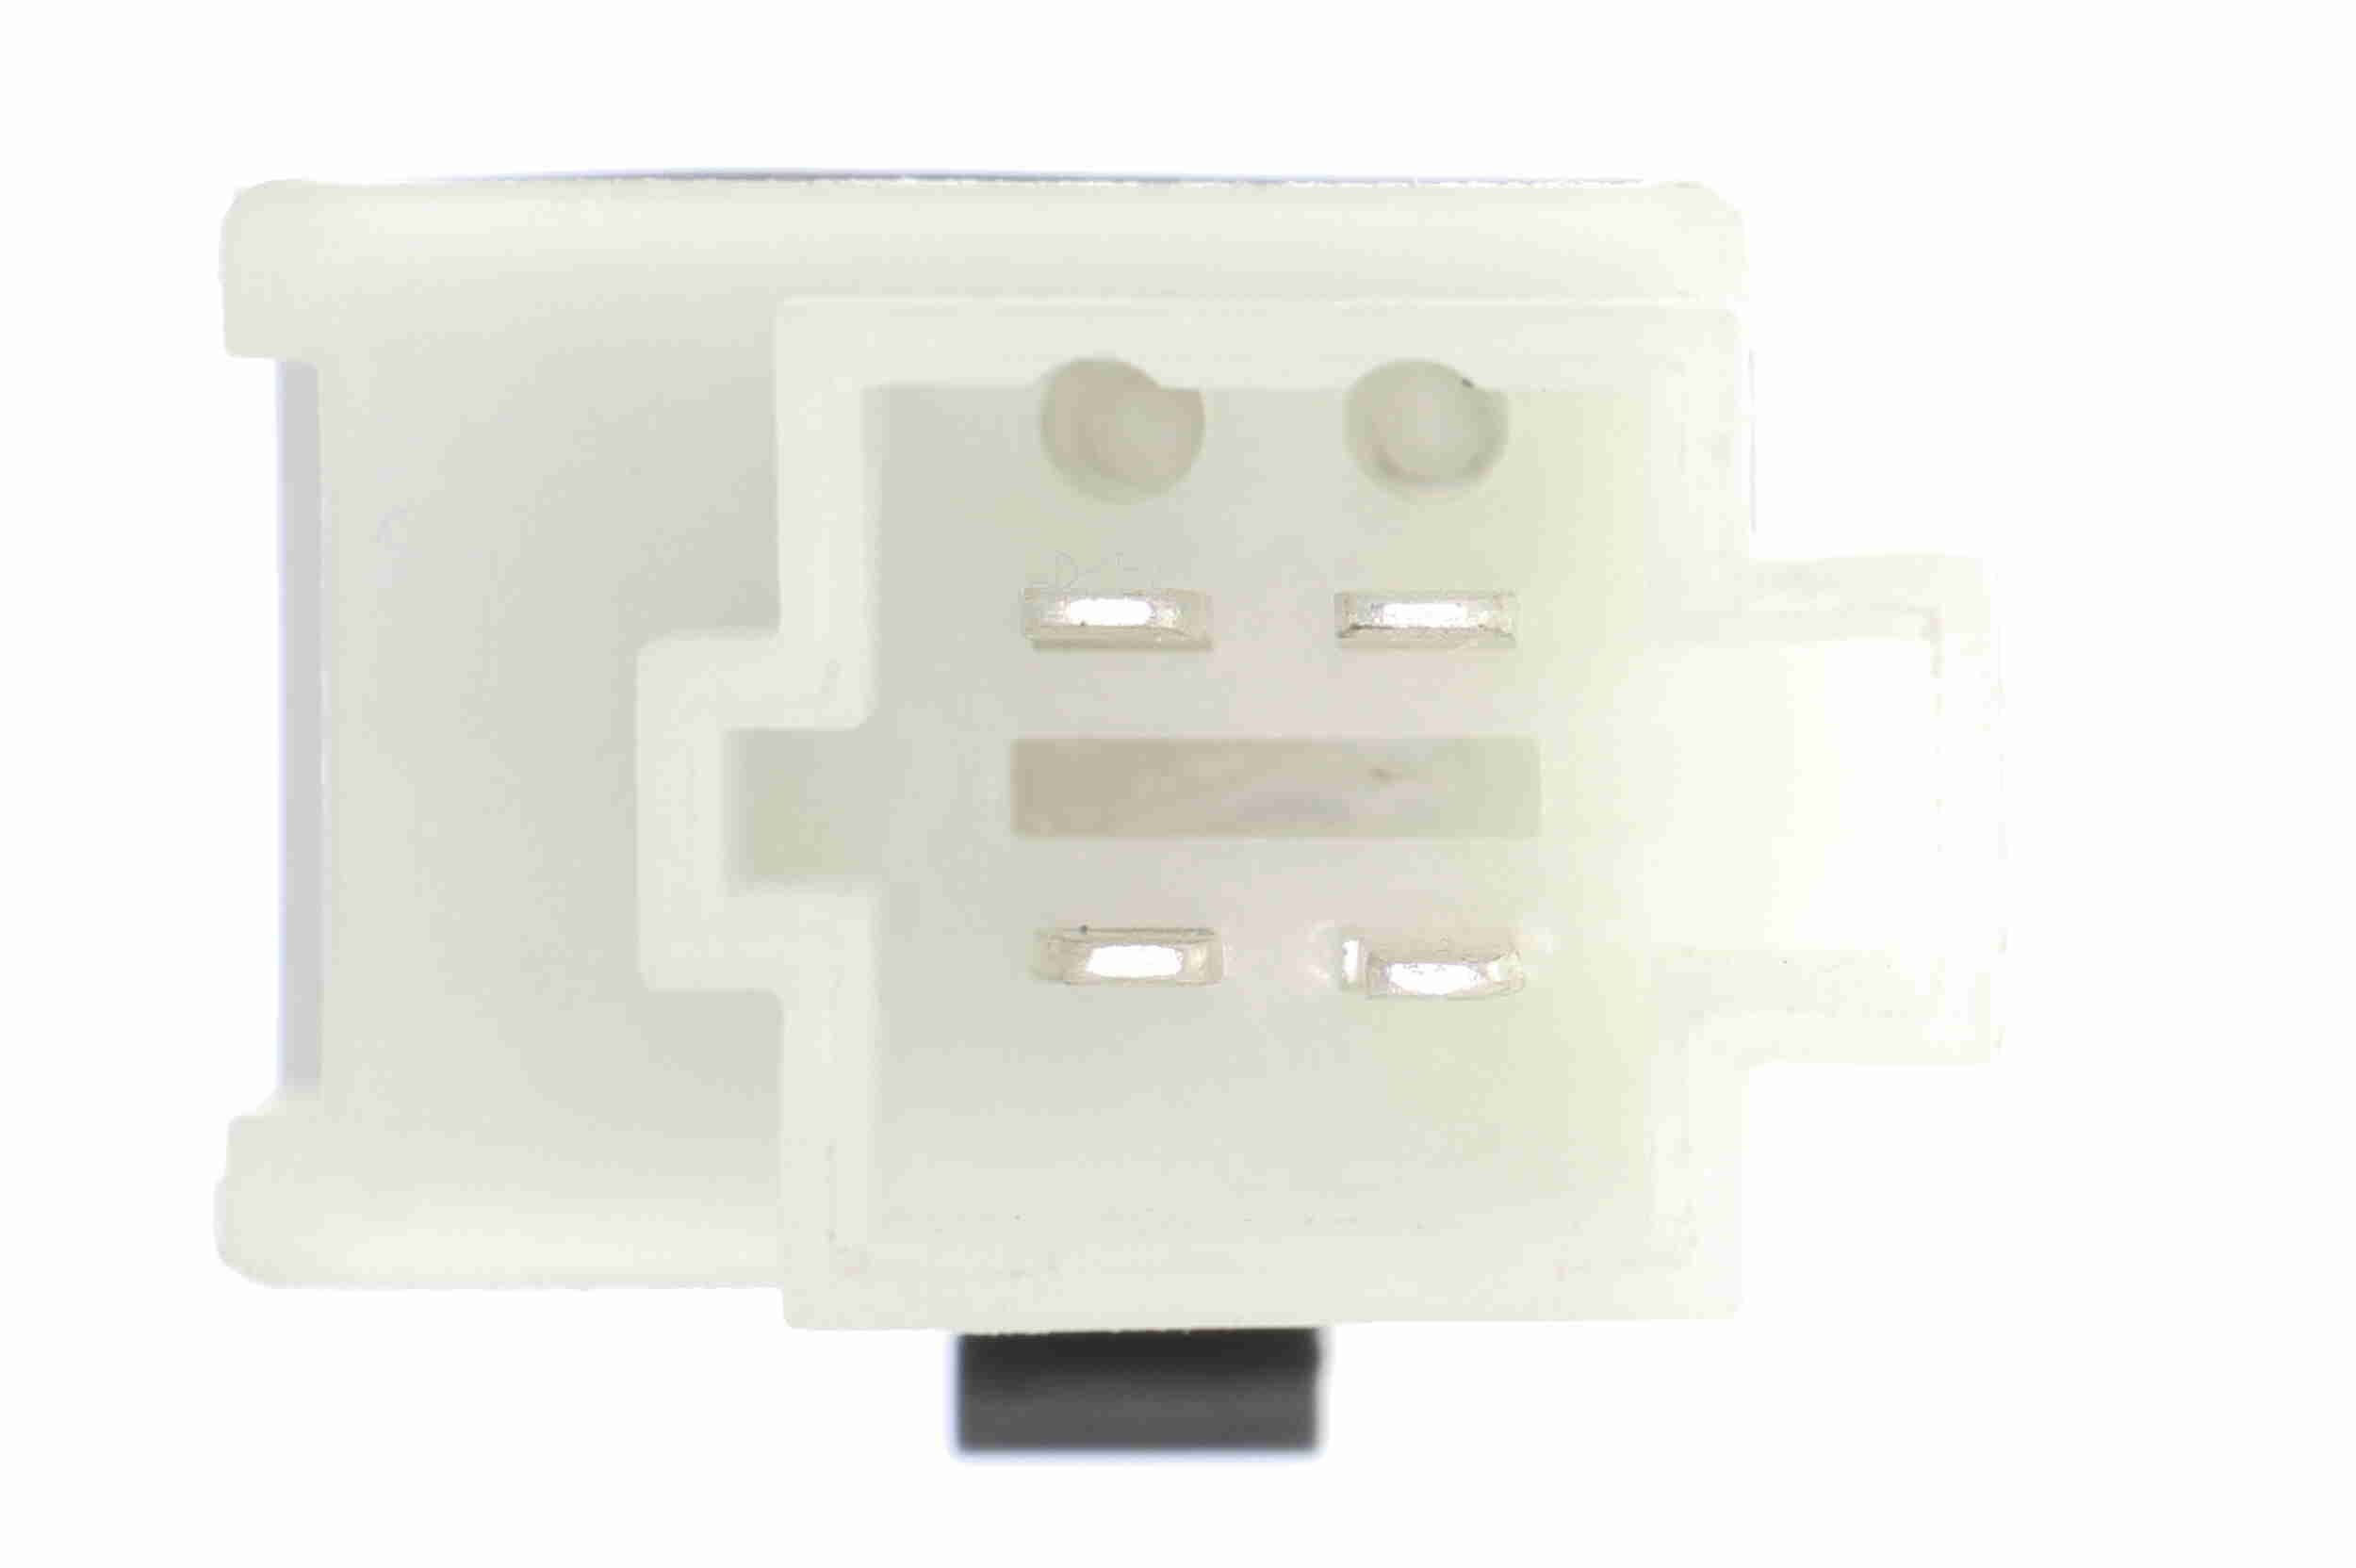 V30730140 Brake light switch sensor VEMO V30-73-0140 review and test